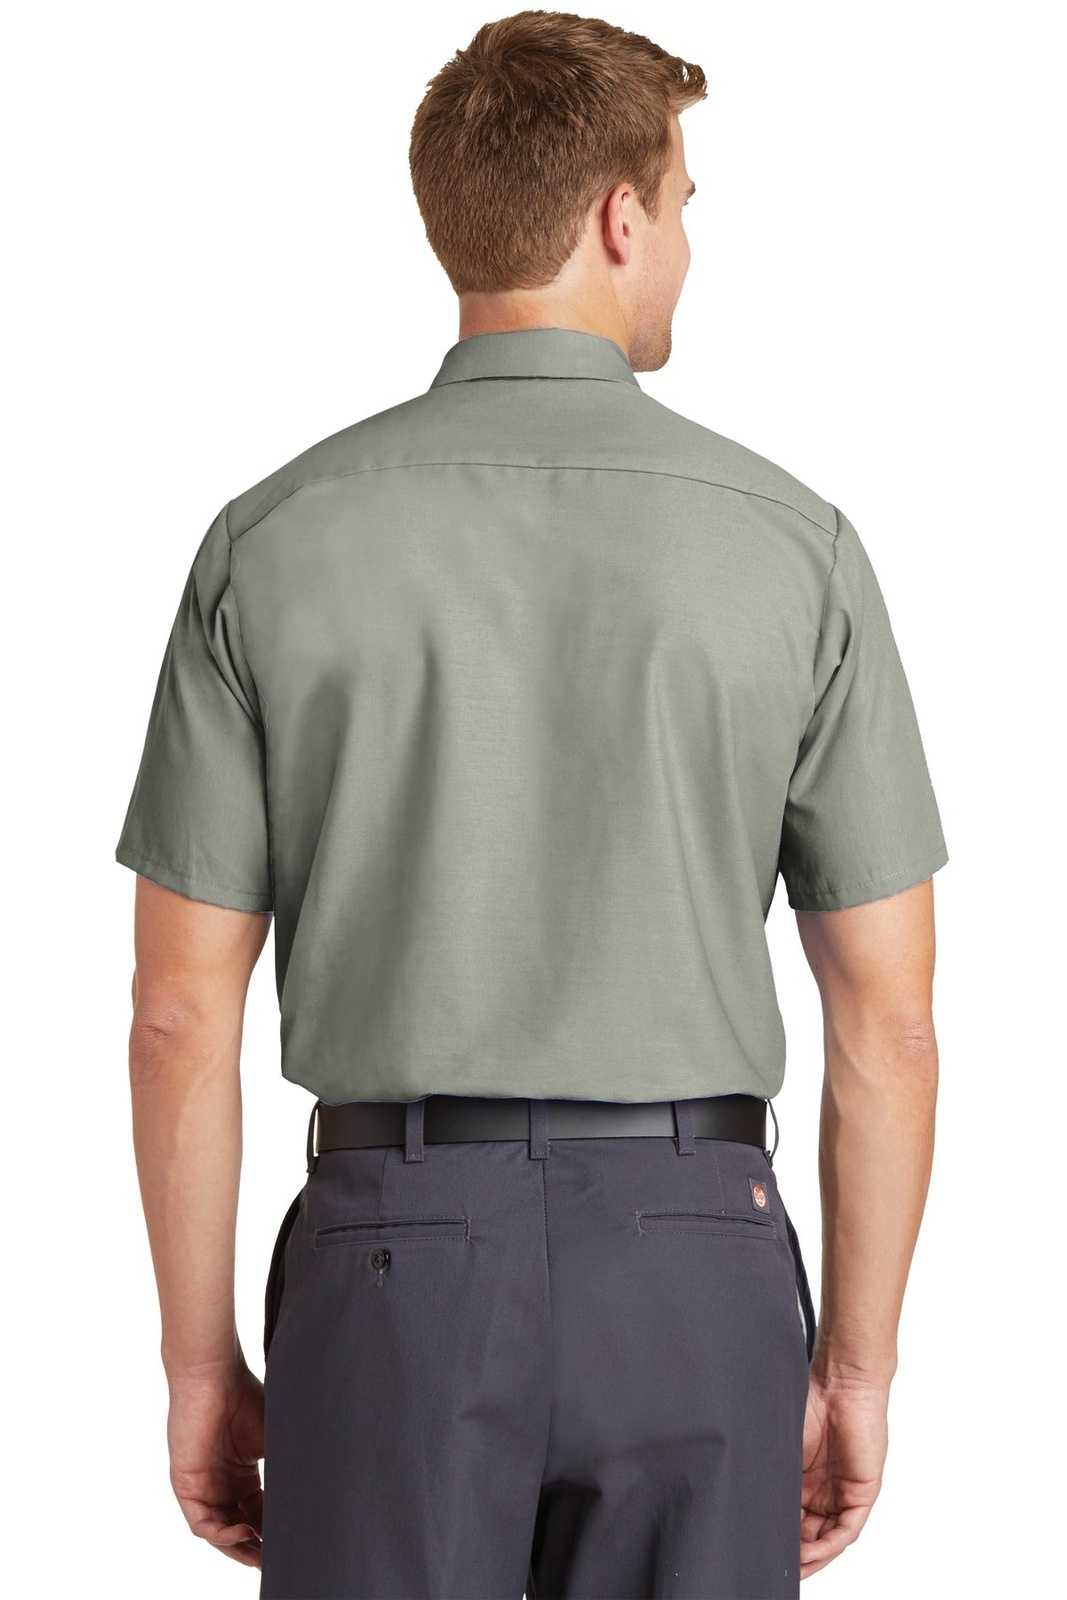 Red Kap SP24 Short Sleeve Industrial Work Shirt - Light Gray - HIT a Double - 2